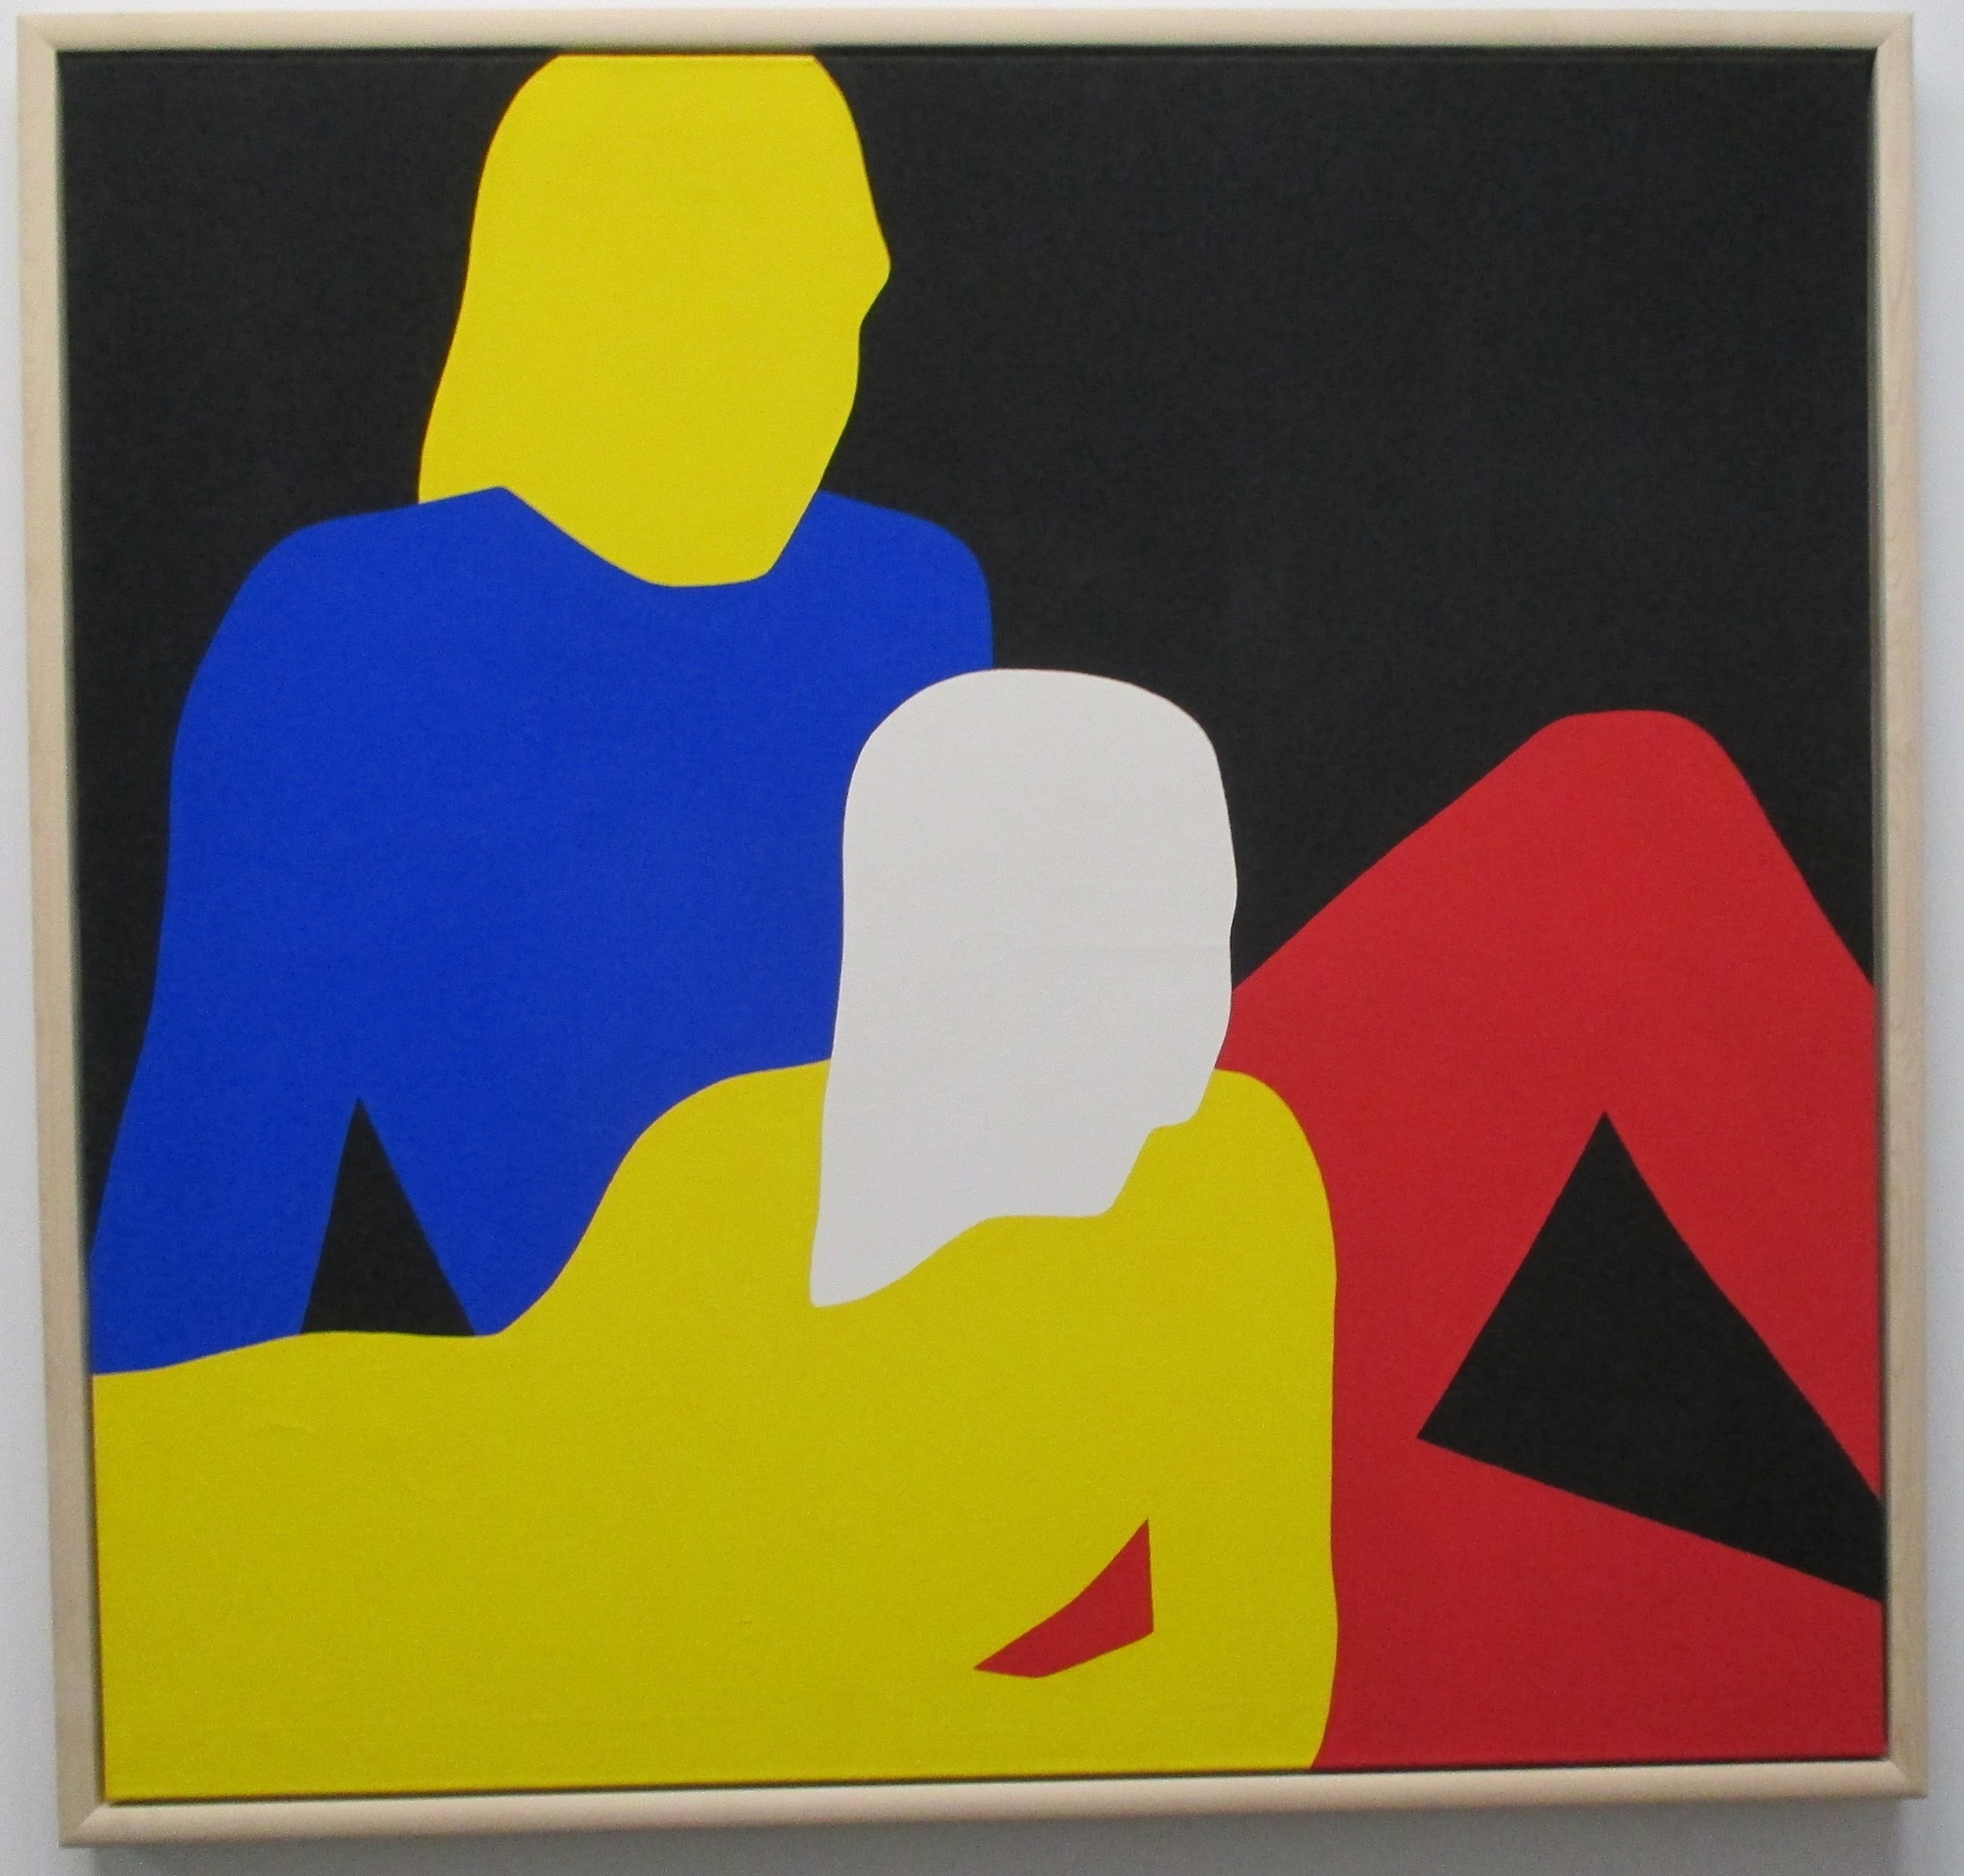 Franz Gertsch. Paar, 1969. Dispersion auf Leinwand. 115,5 x 120 cm. Im Besitze des Künstlers. AC-Preis 1966. (Bilder André Pfenninger)
